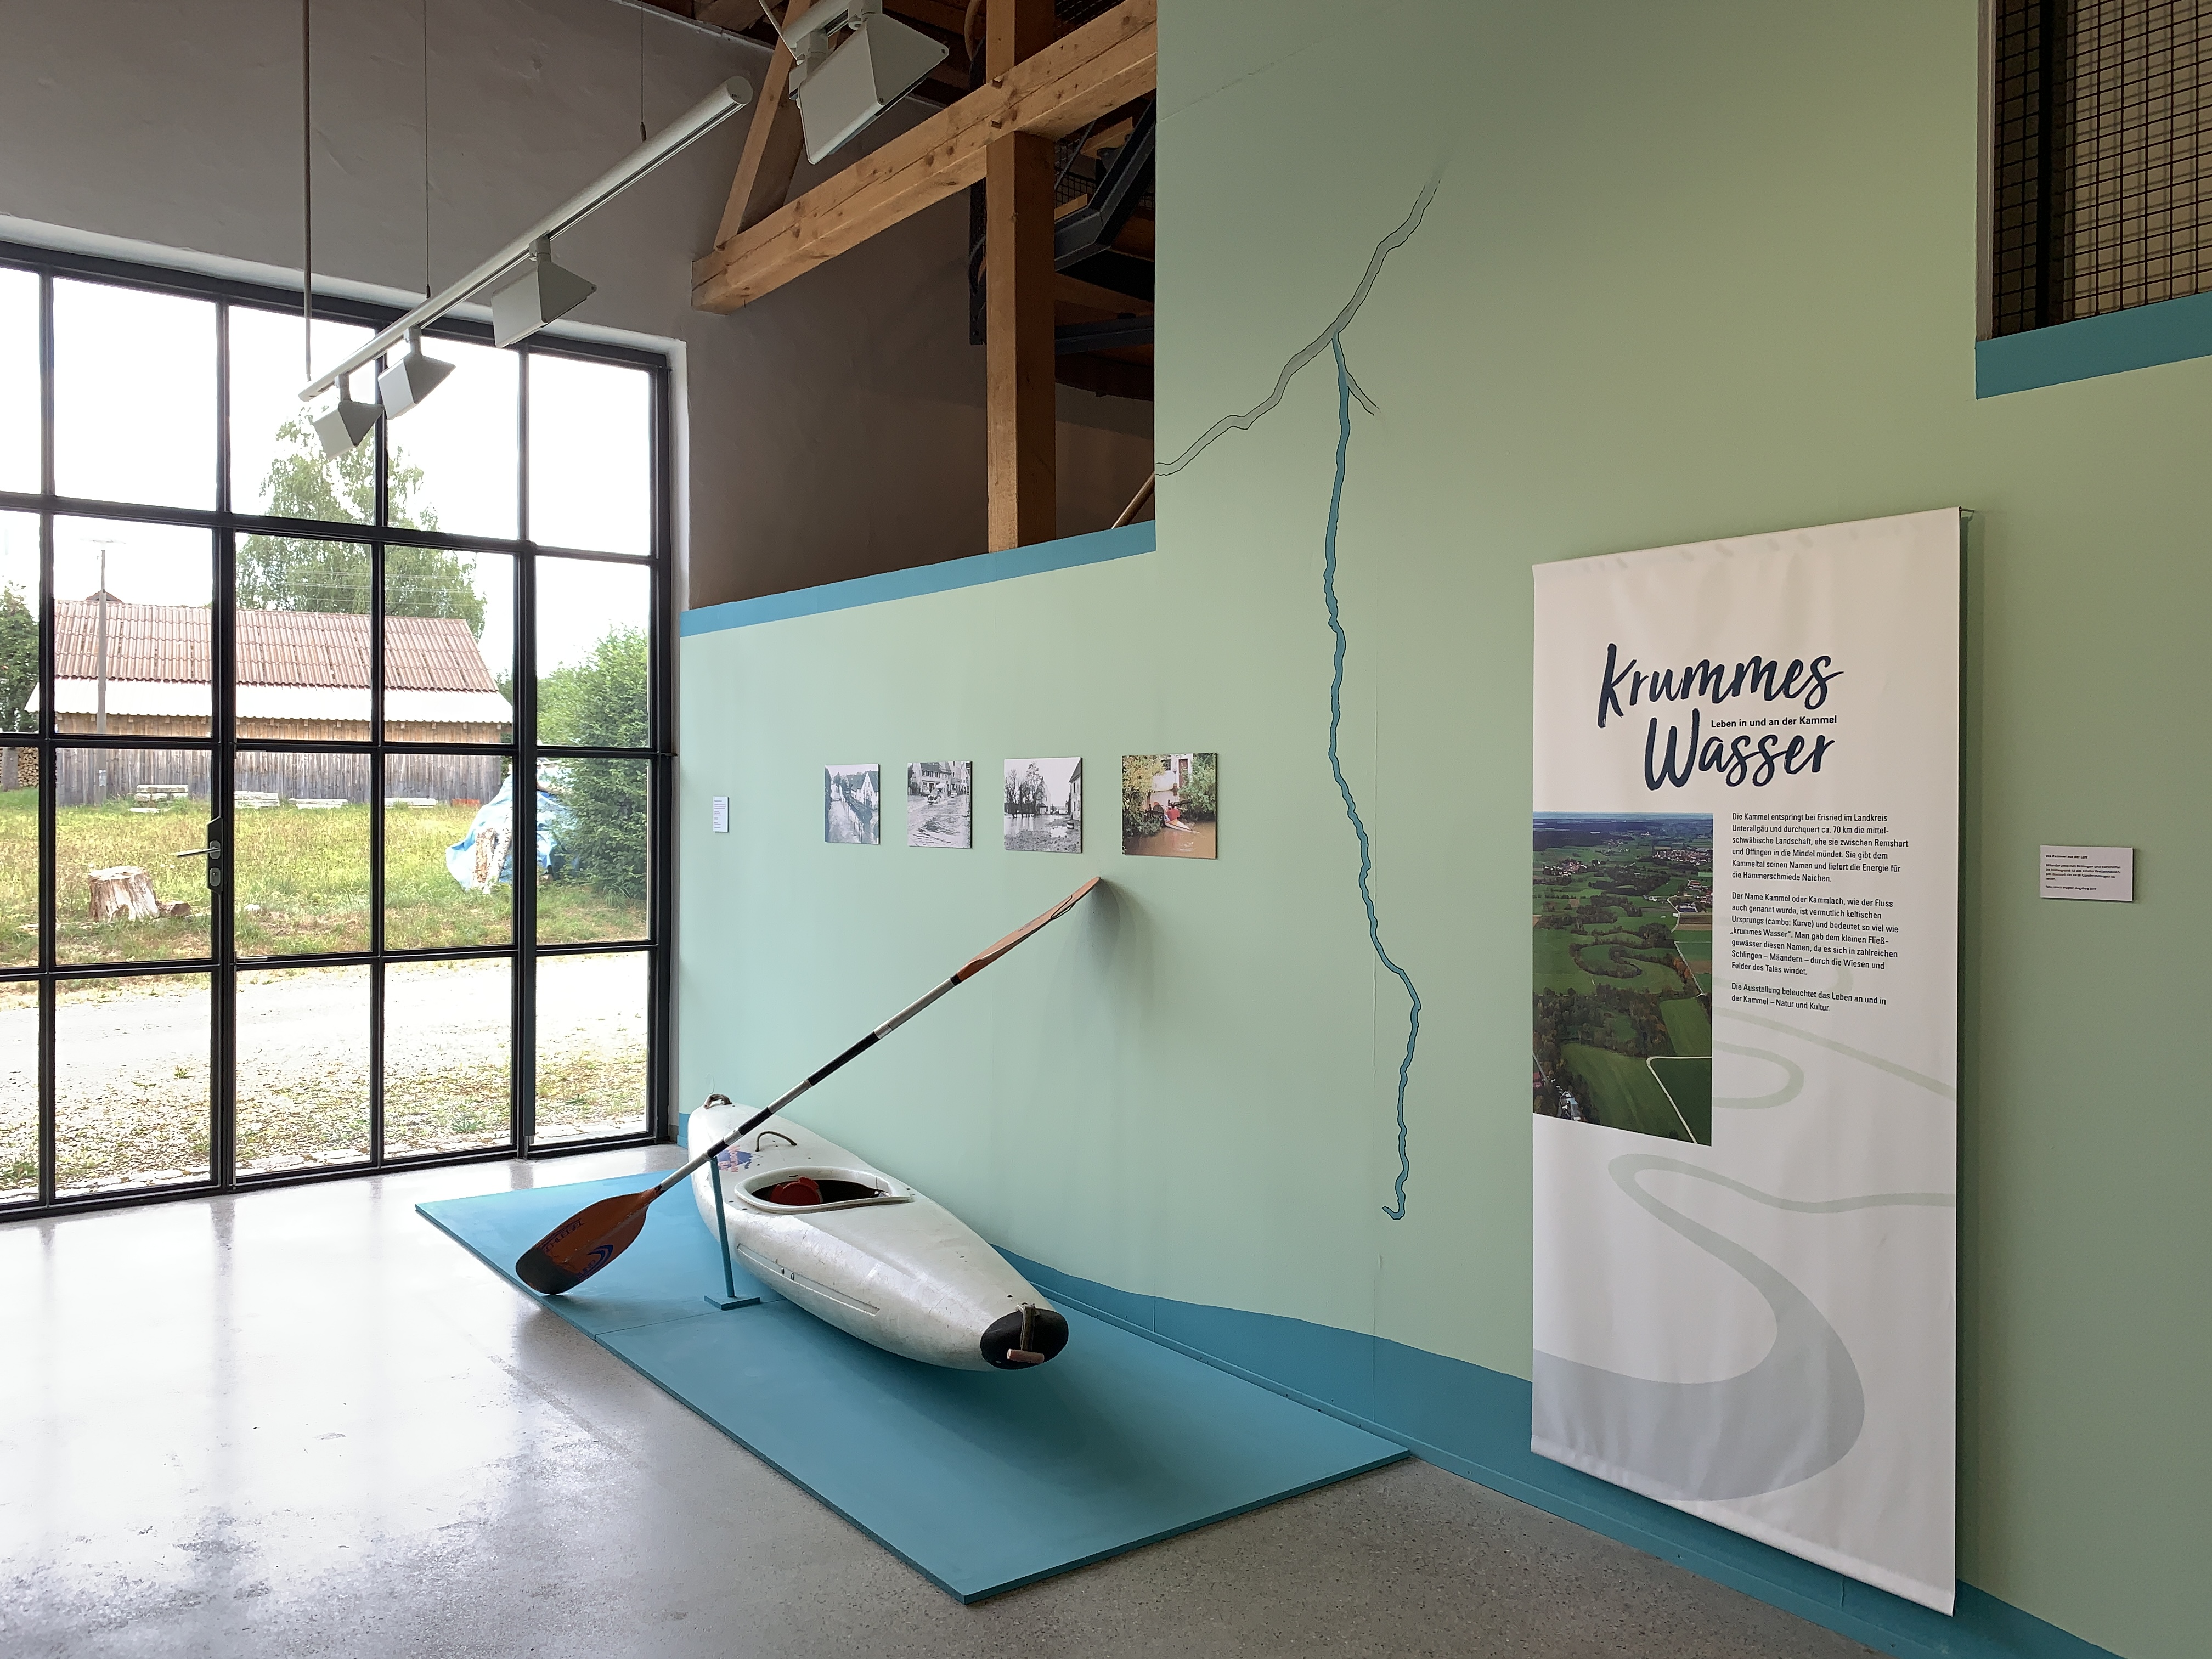 Wie die Kammel zu ihrem Namen kam: erklärt die Ausstellung „Krummes Wasser“ - Foto: Christine Hofmann-Brand